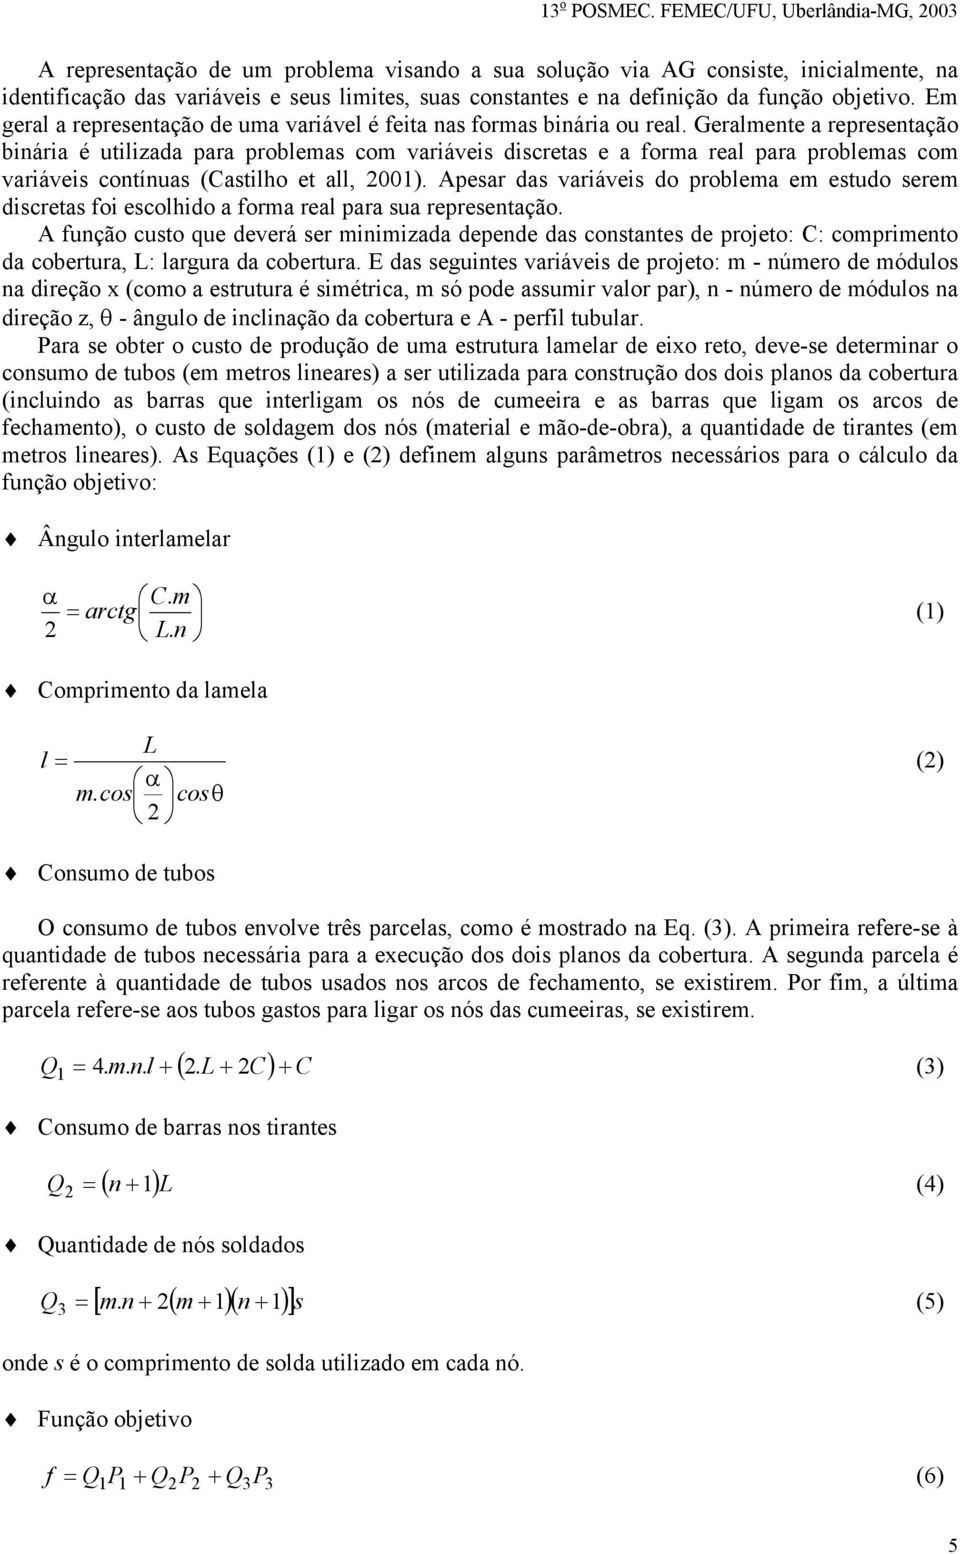 Geralmente a representação binária é utilizada para problemas com variáveis discretas e a forma real para problemas com variáveis contínuas (Castilho et all, 2001).